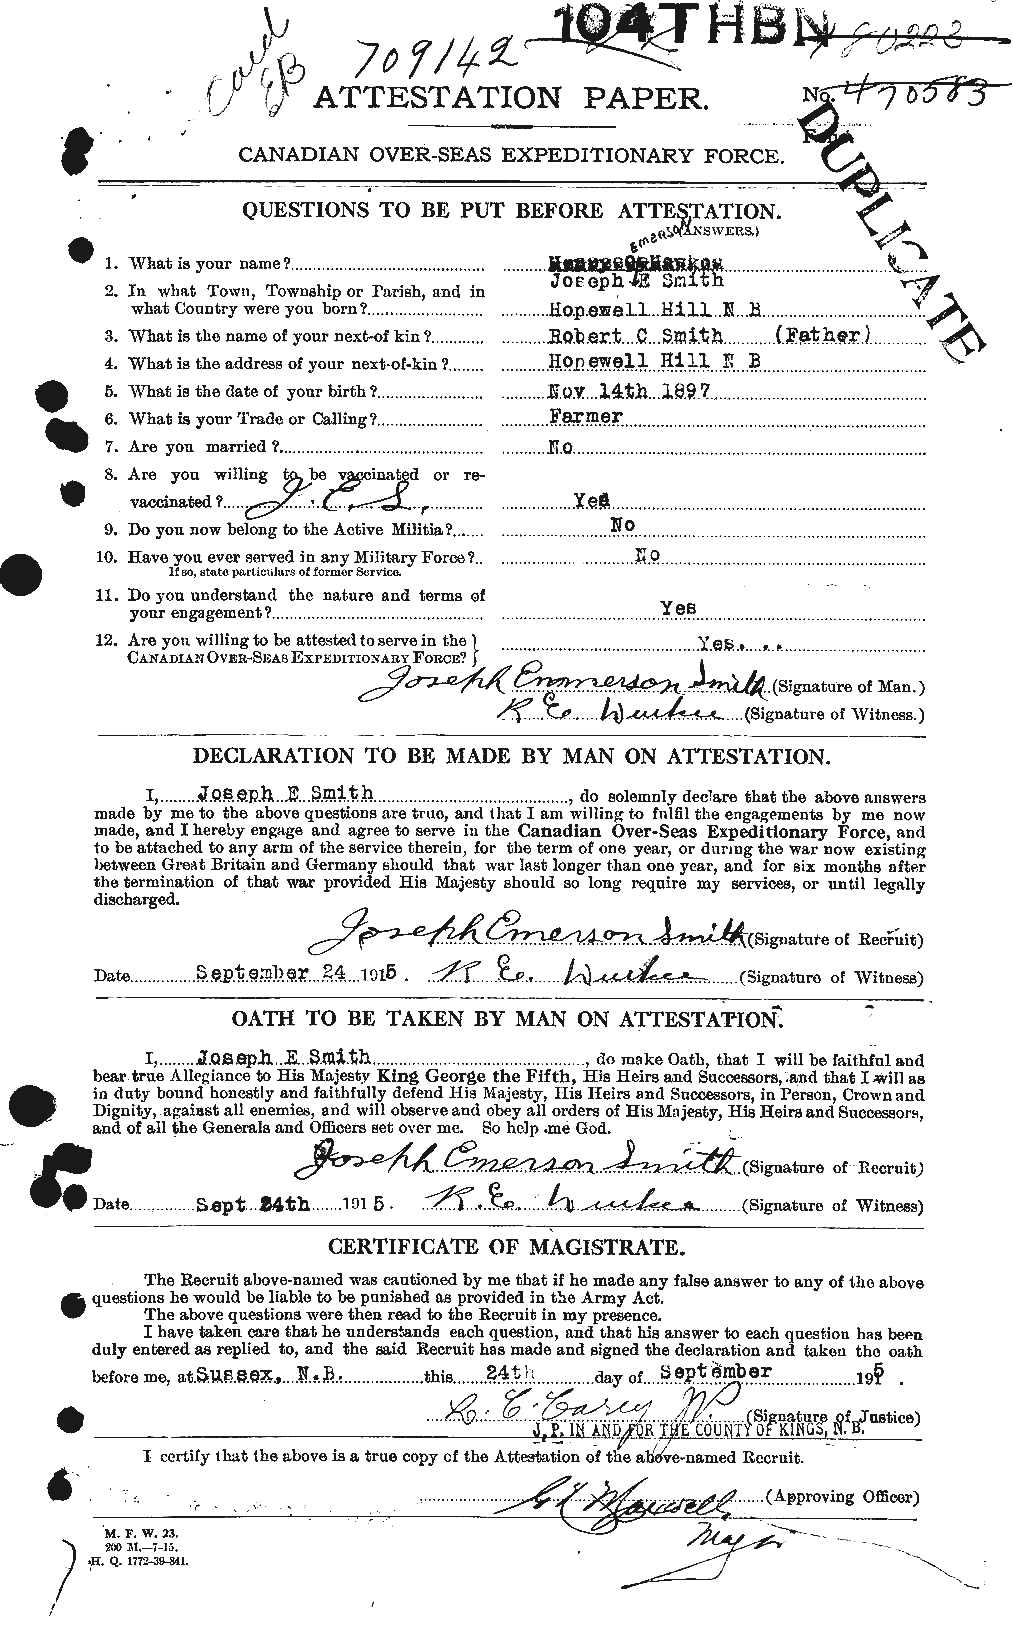 Dossiers du Personnel de la Première Guerre mondiale - CEC 622081a